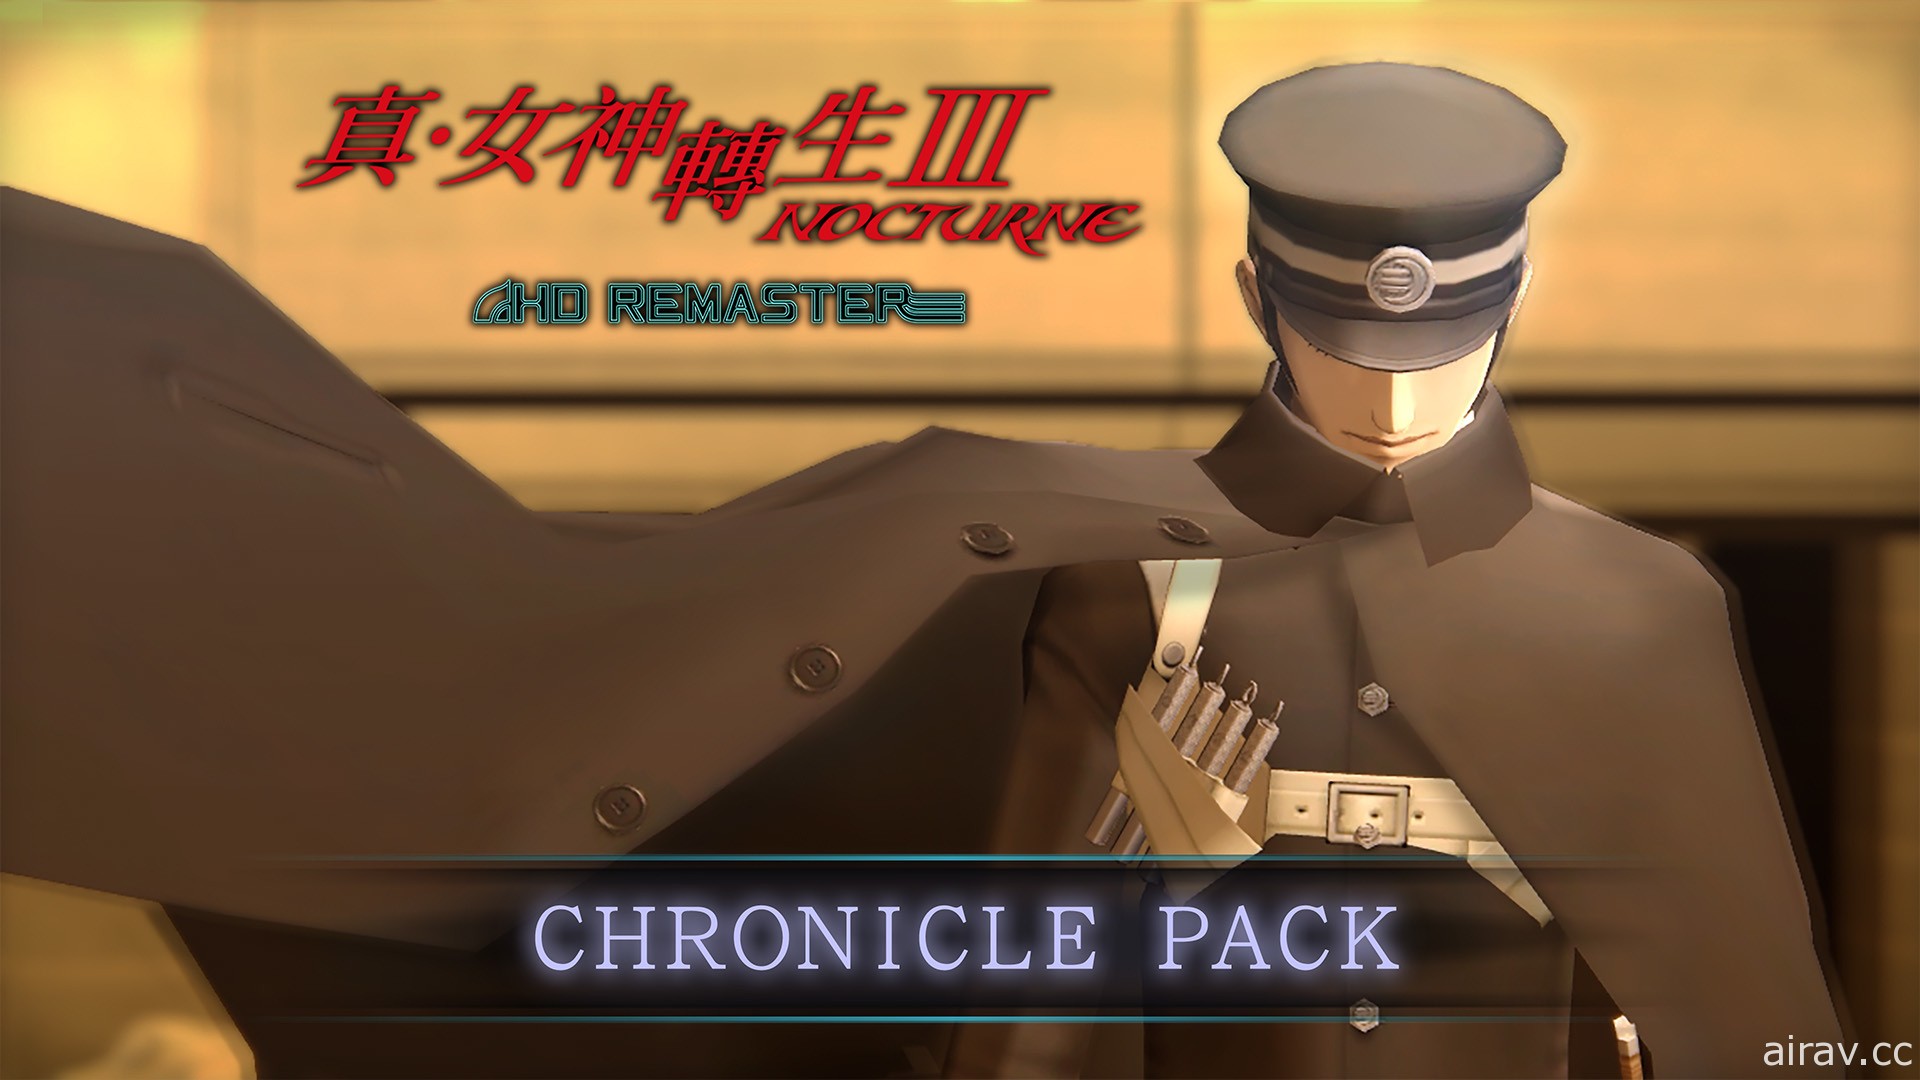 《真‧女神轉生 III Nocturne HD Remaster》追加 DLC「Chronicle Pack」釋出